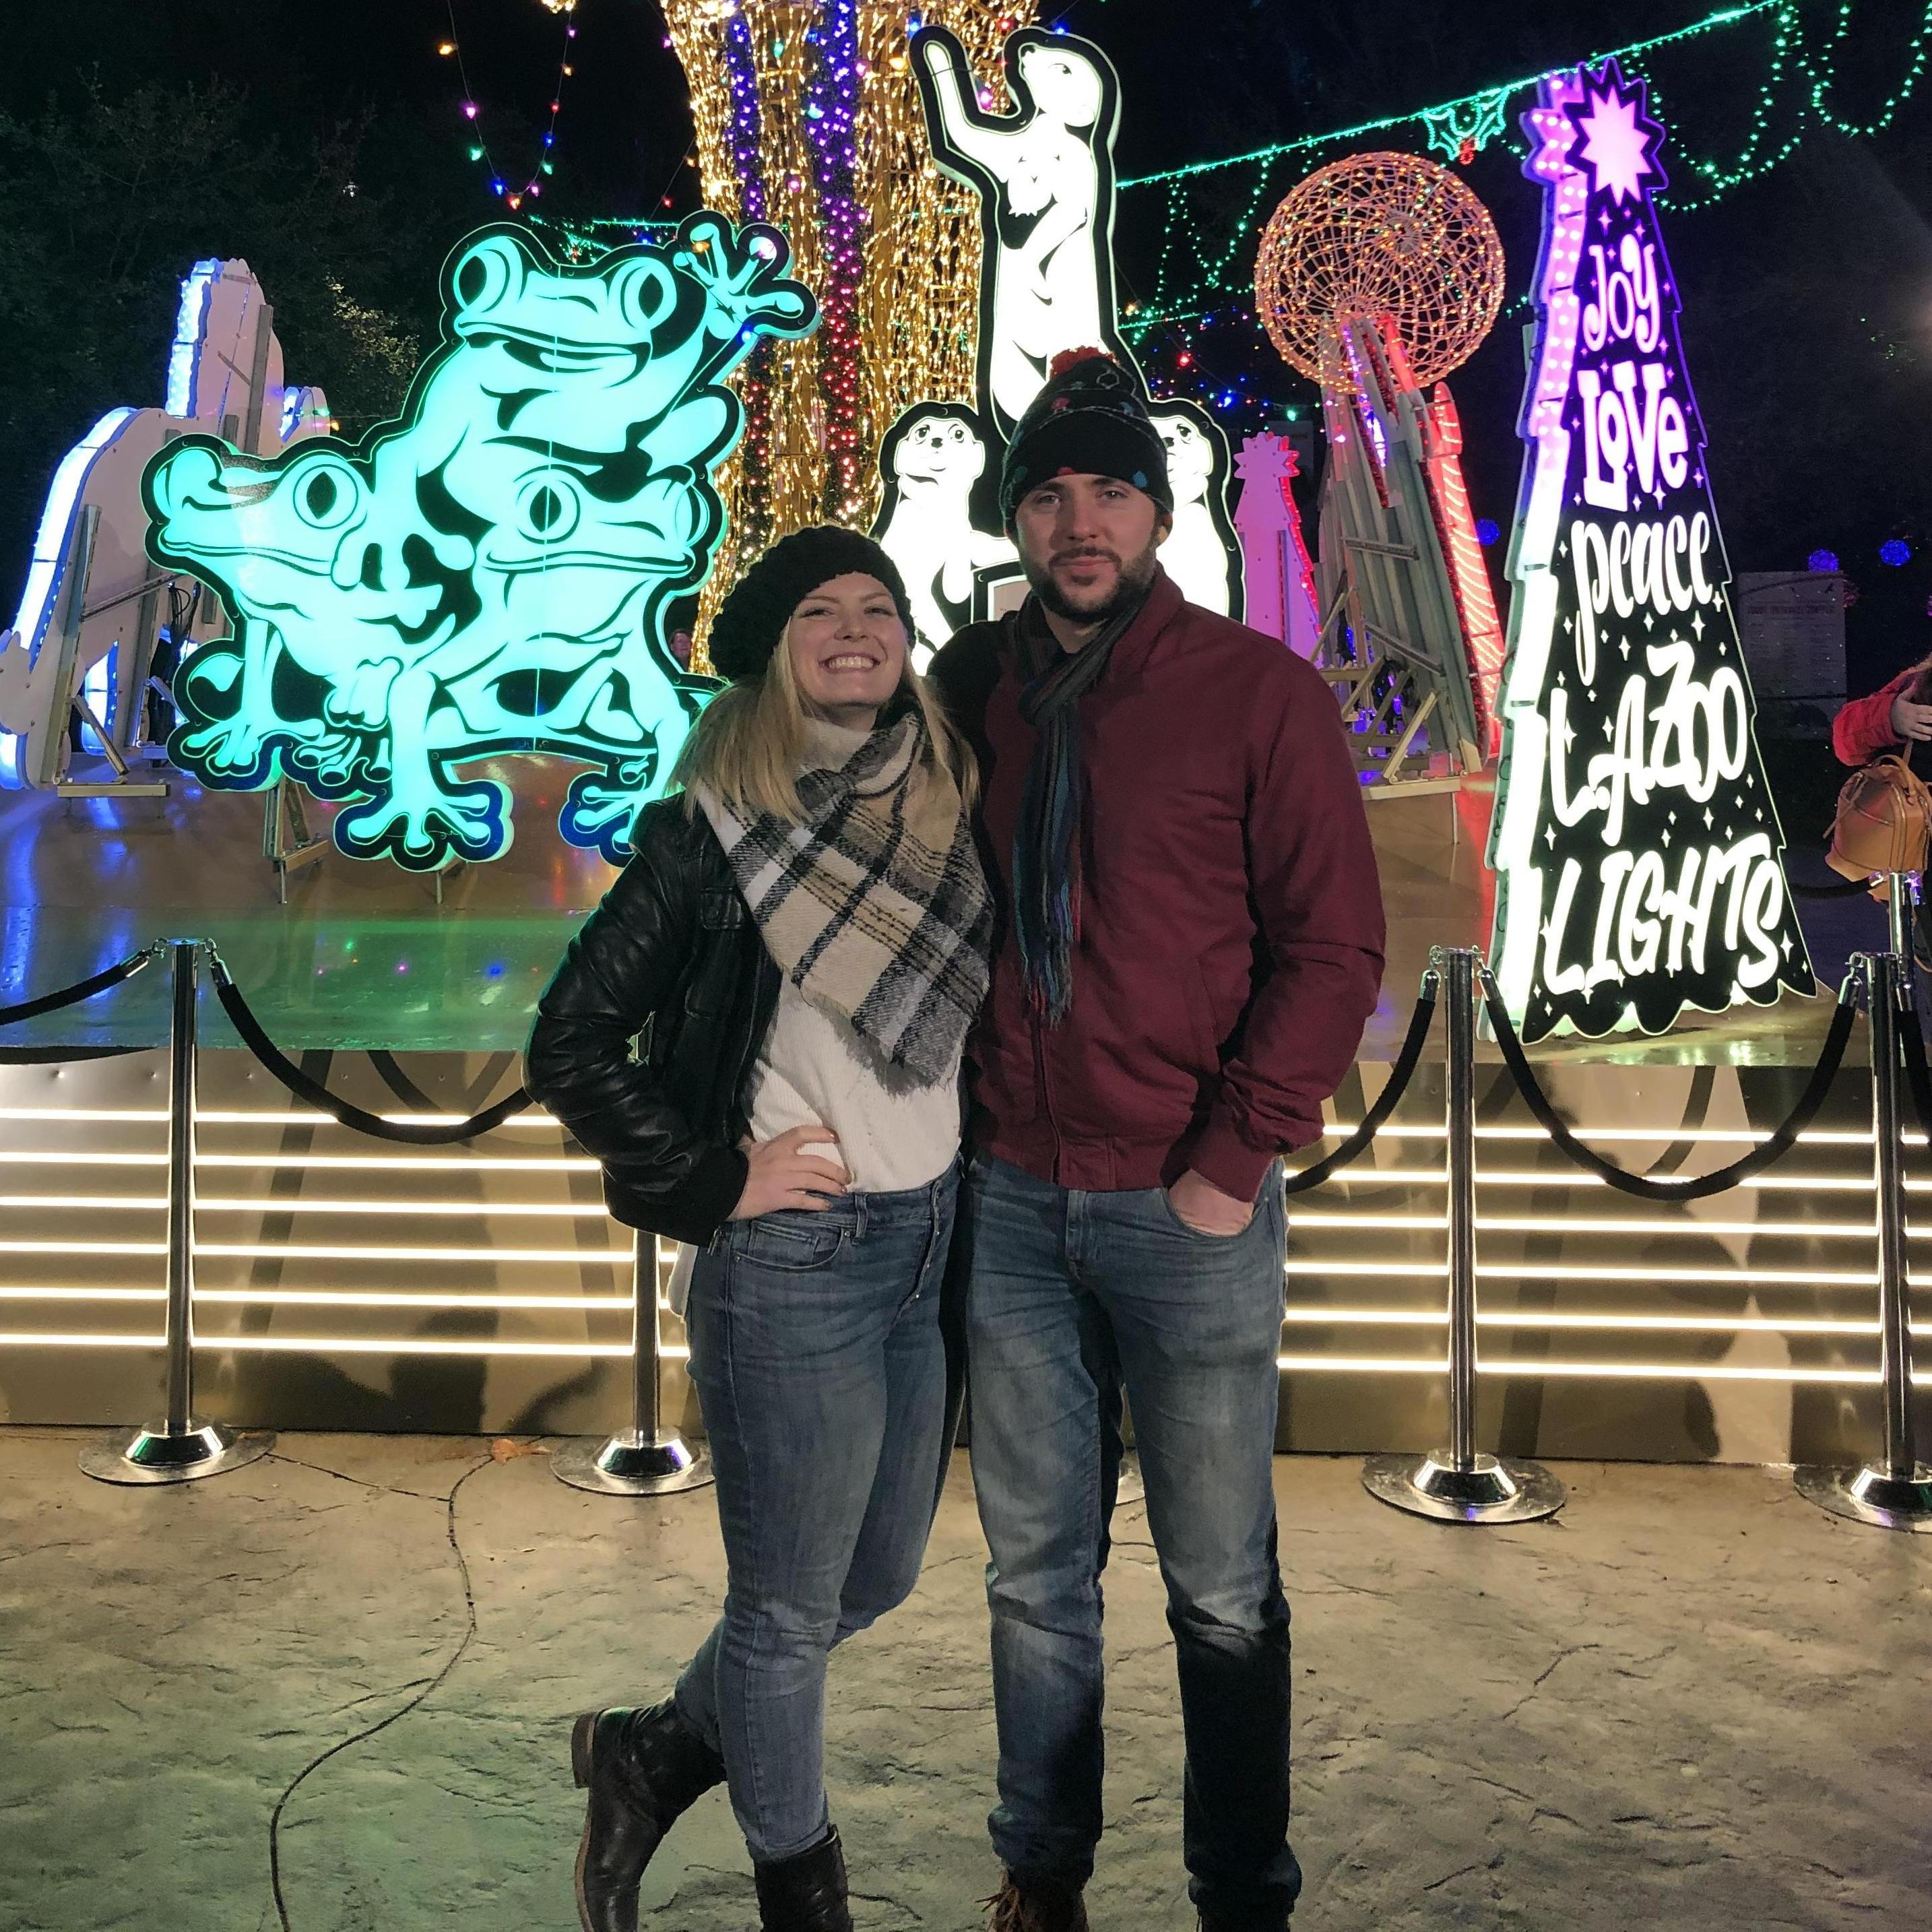 LA Zoo Christmas lights
2019